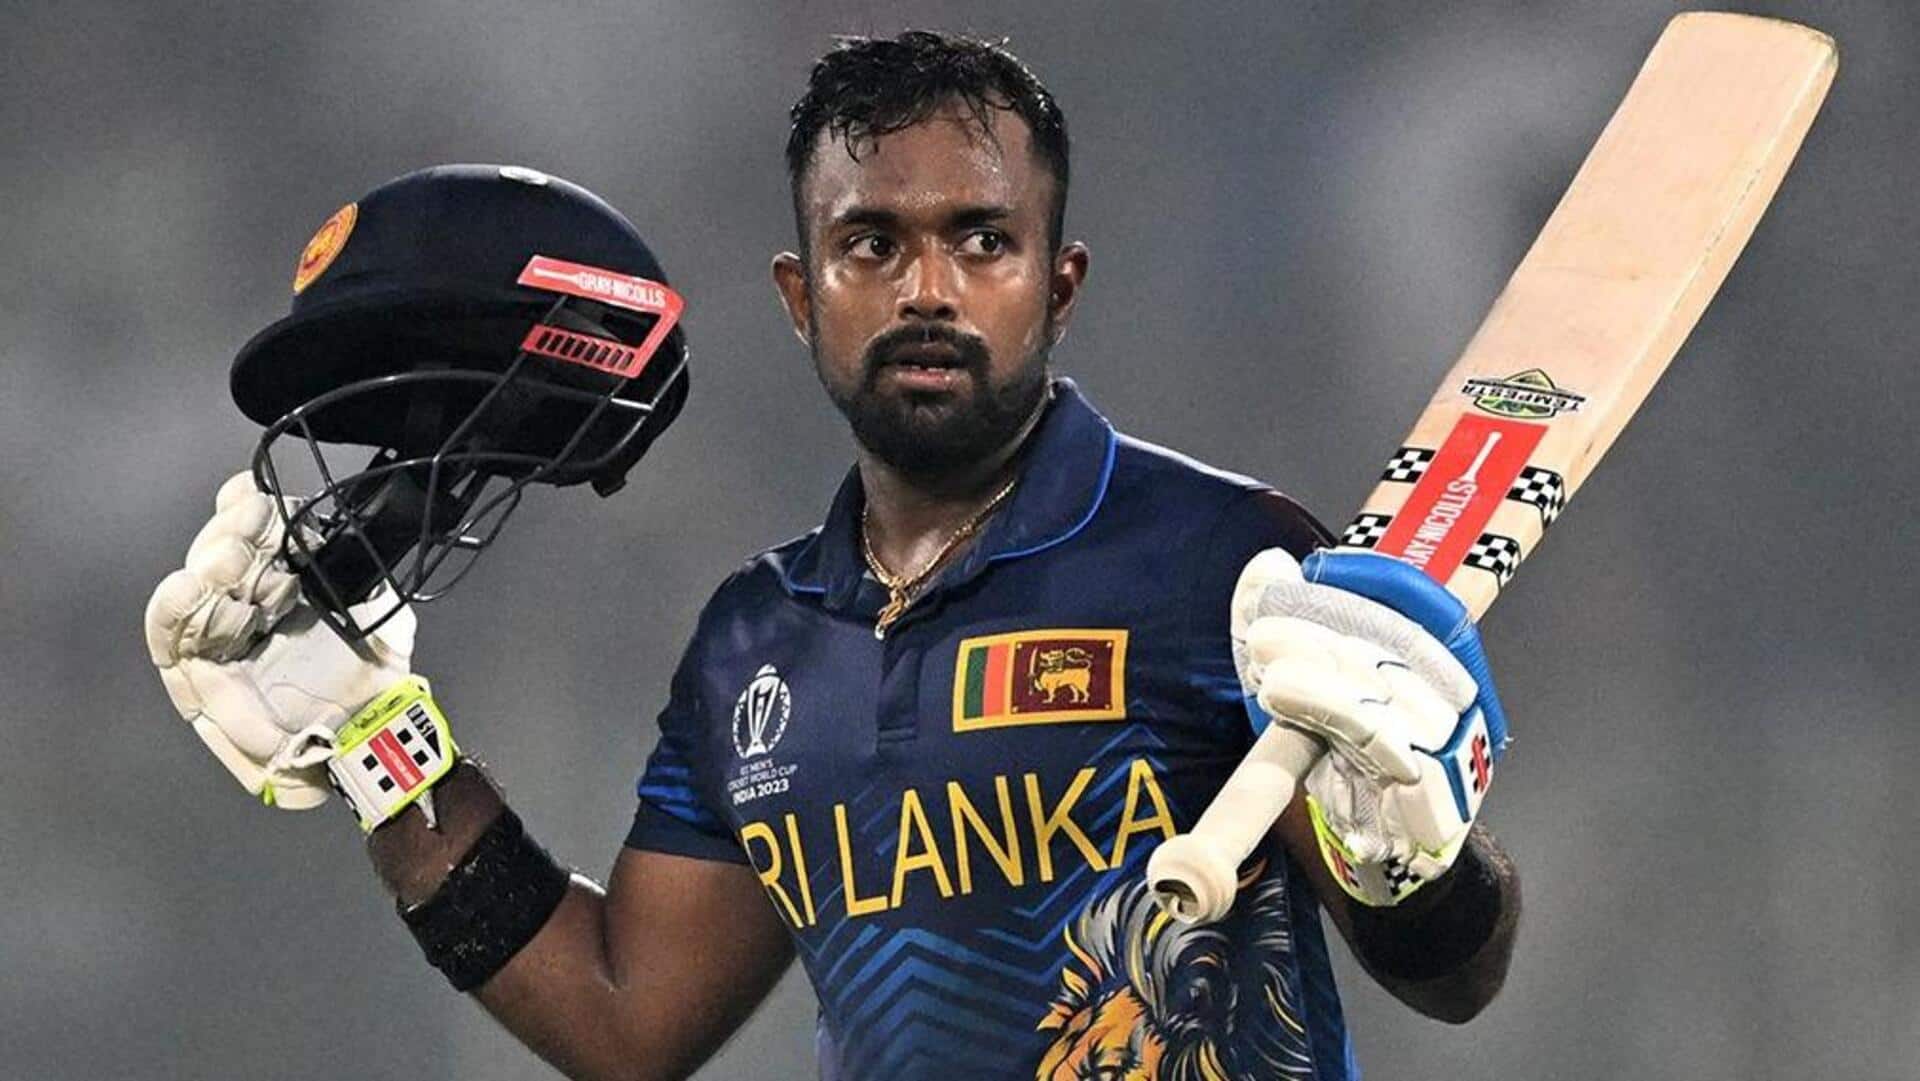 Sri Lanka's Charith Asalanka slams his maiden World Cup ton